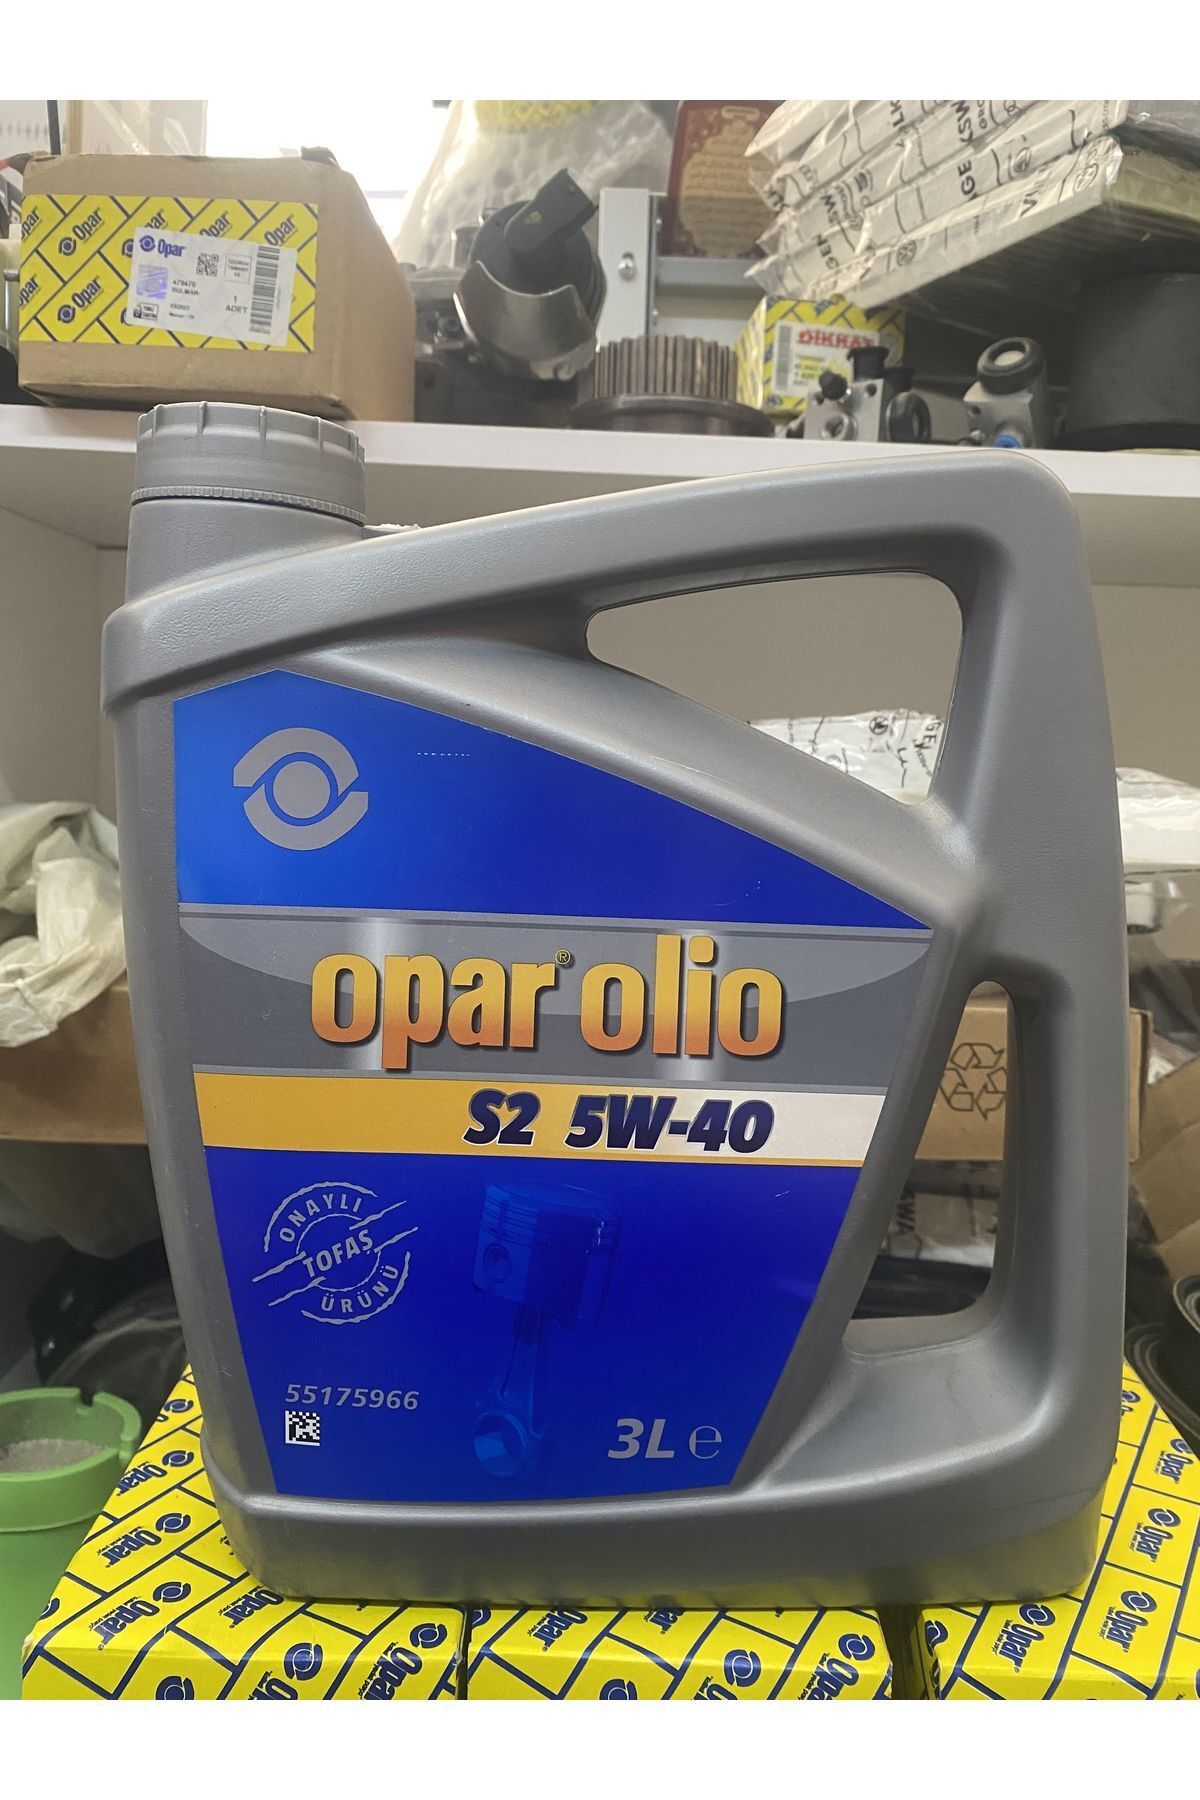 Opar Olio S2 5W40 3Lt - 55175966